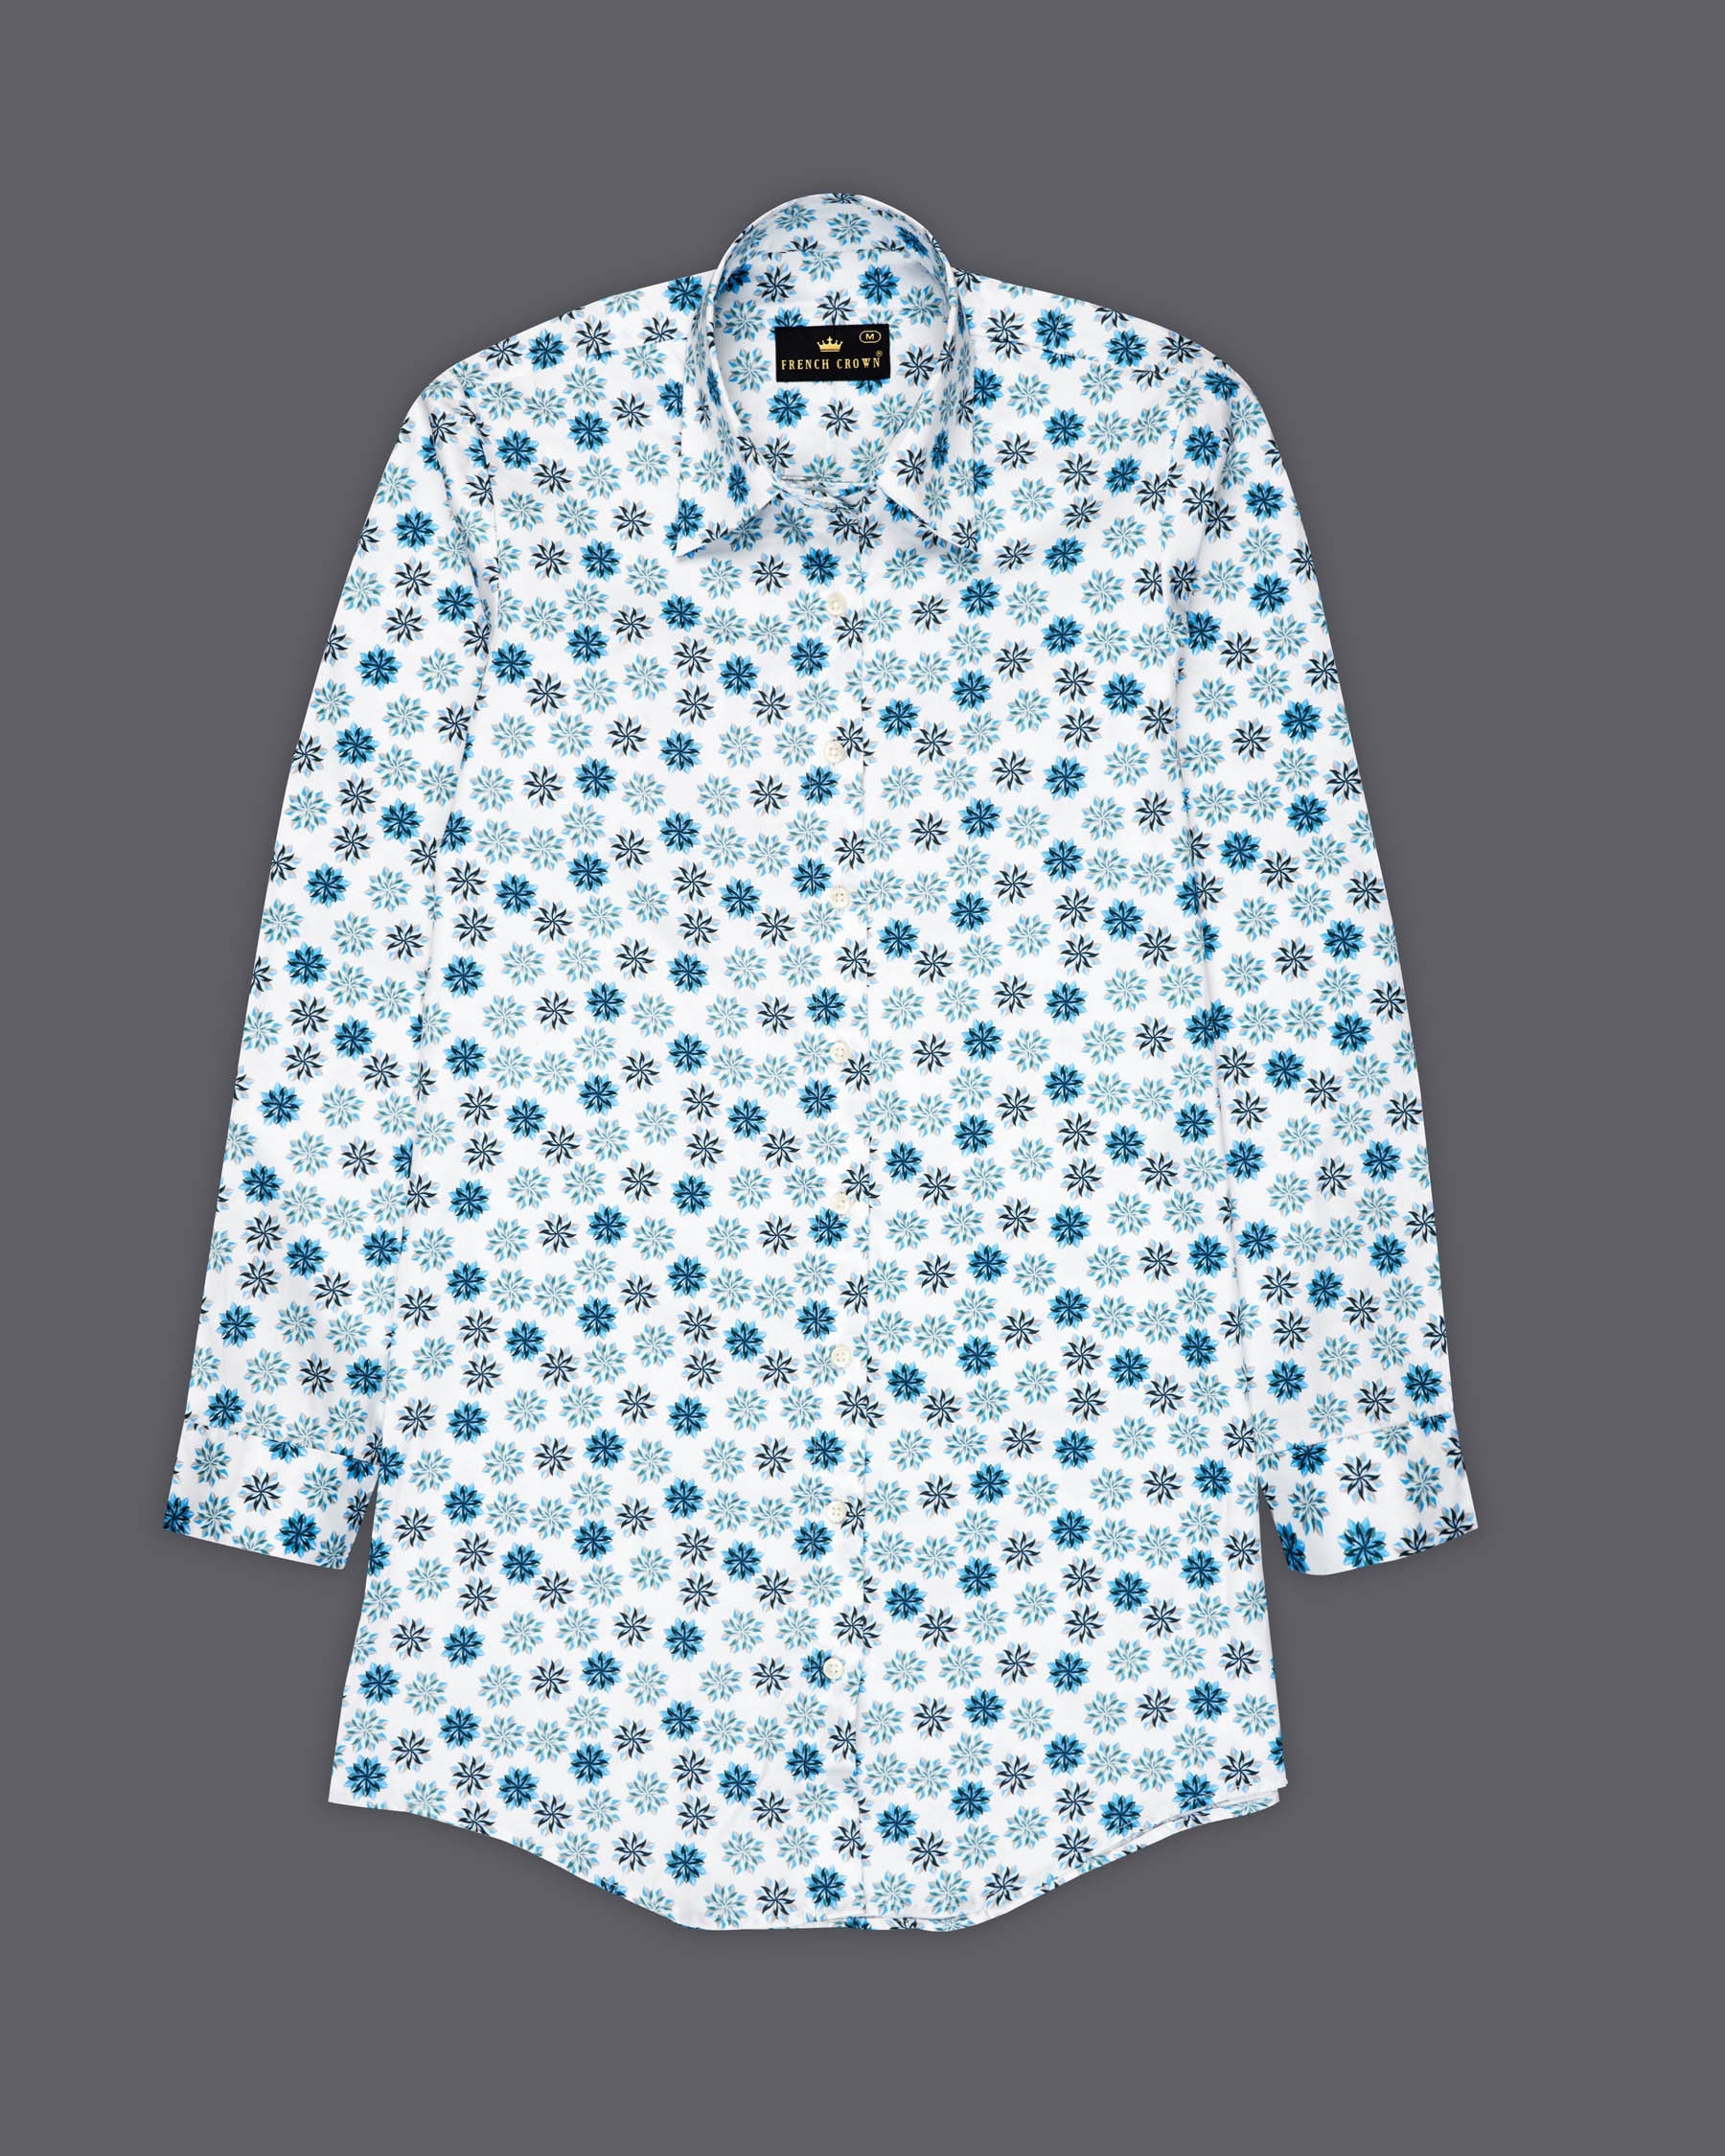 Merino Beige Printed Super Soft Premium Cotton Women’s Shirt WS058-M-32, WS058-M-34, WS058-M-36, WS058-M-38, WS058-M-40, WS058-M-42